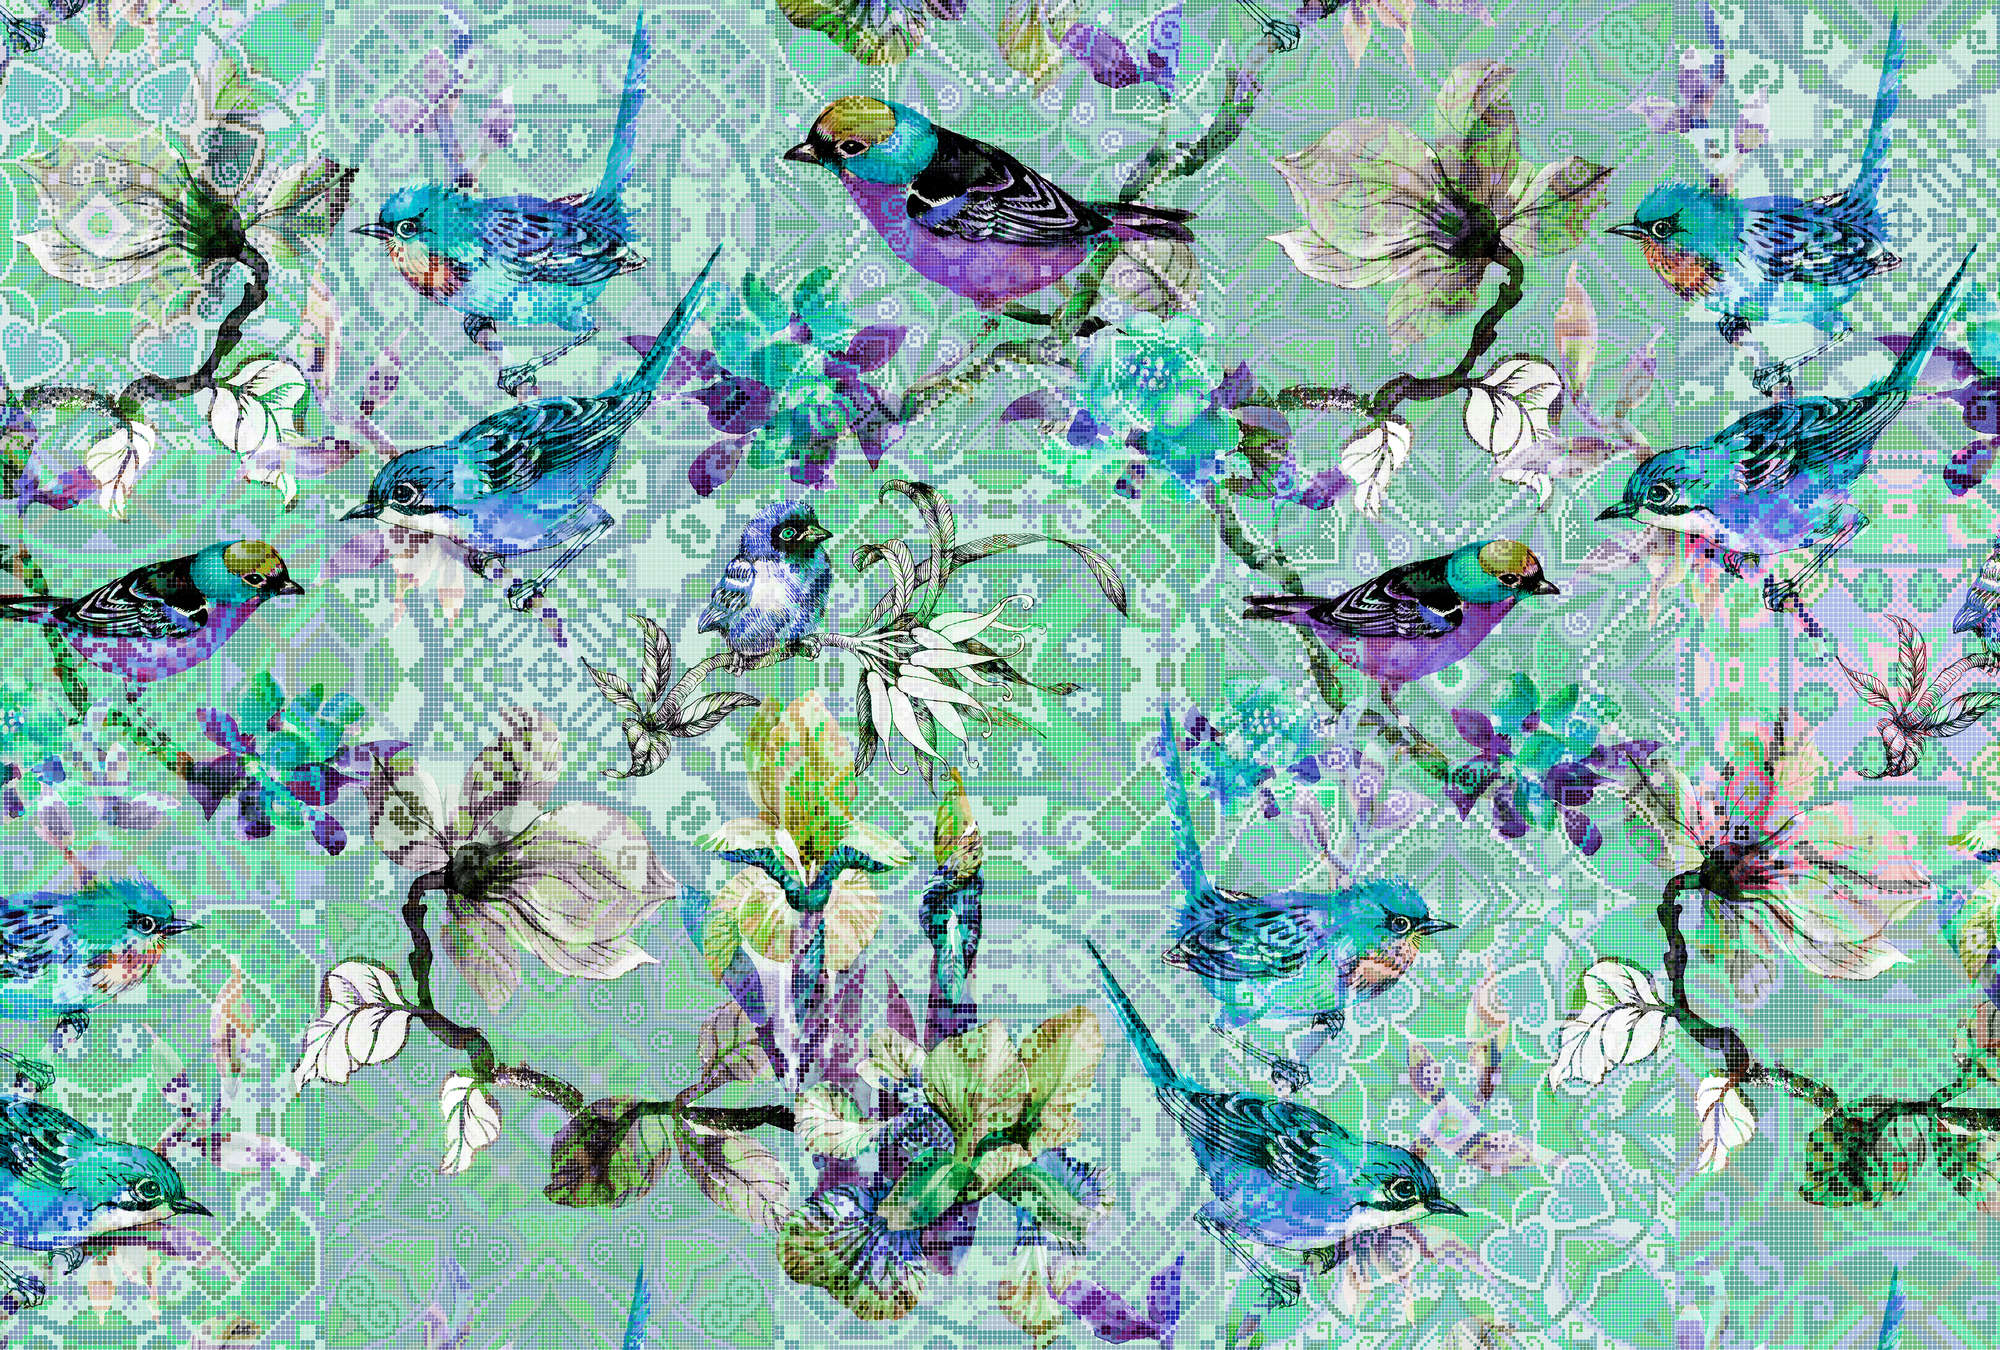             Papier peint oiseau avec motif mosaïque - Walls by Patel
        